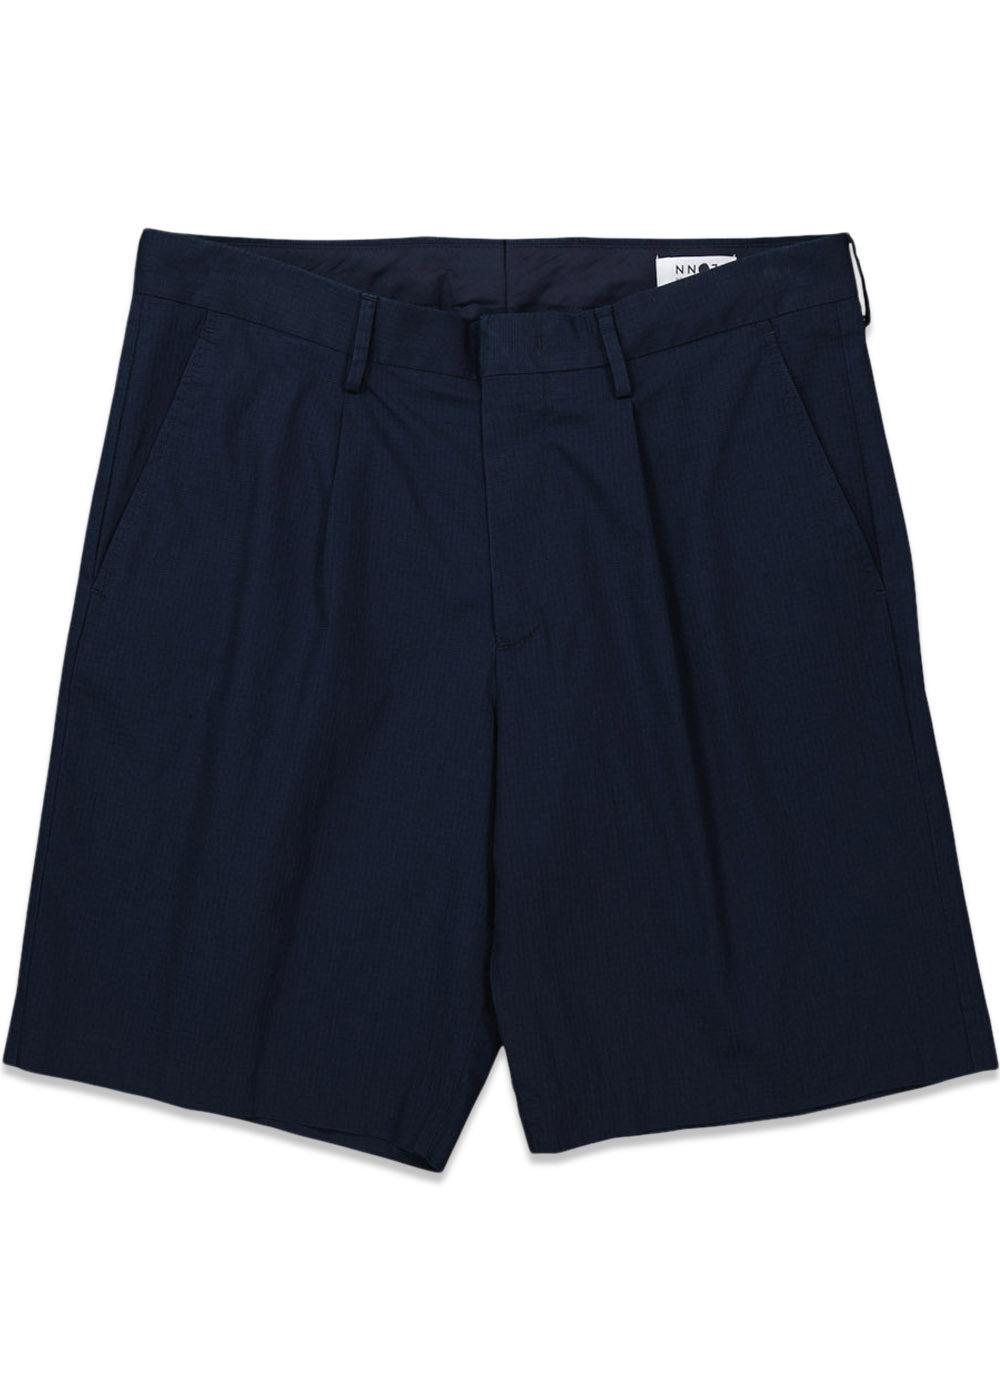 Nn. 07s Bill Shorts 1449 - Navy Blue. Køb shorts her.